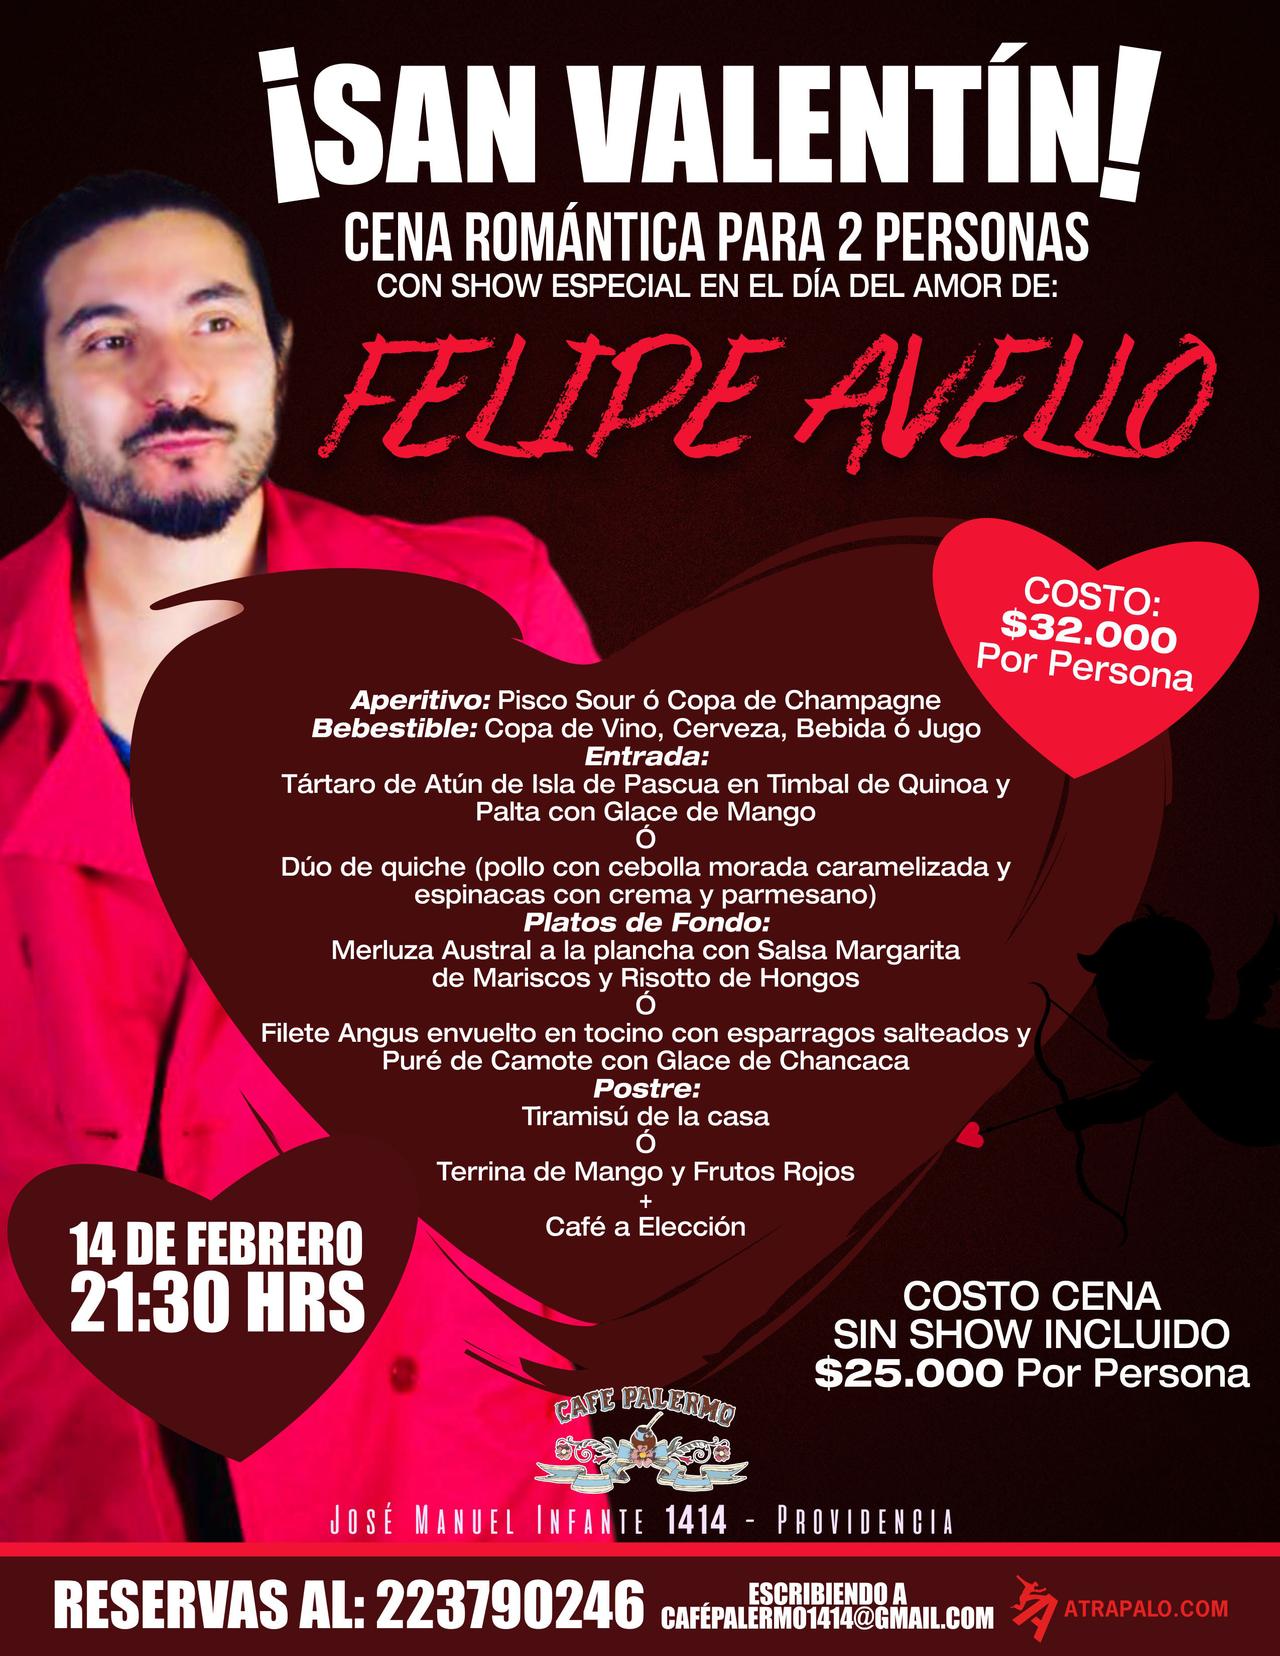 Cena del dia de San Valentín & Show de Felipe Avello